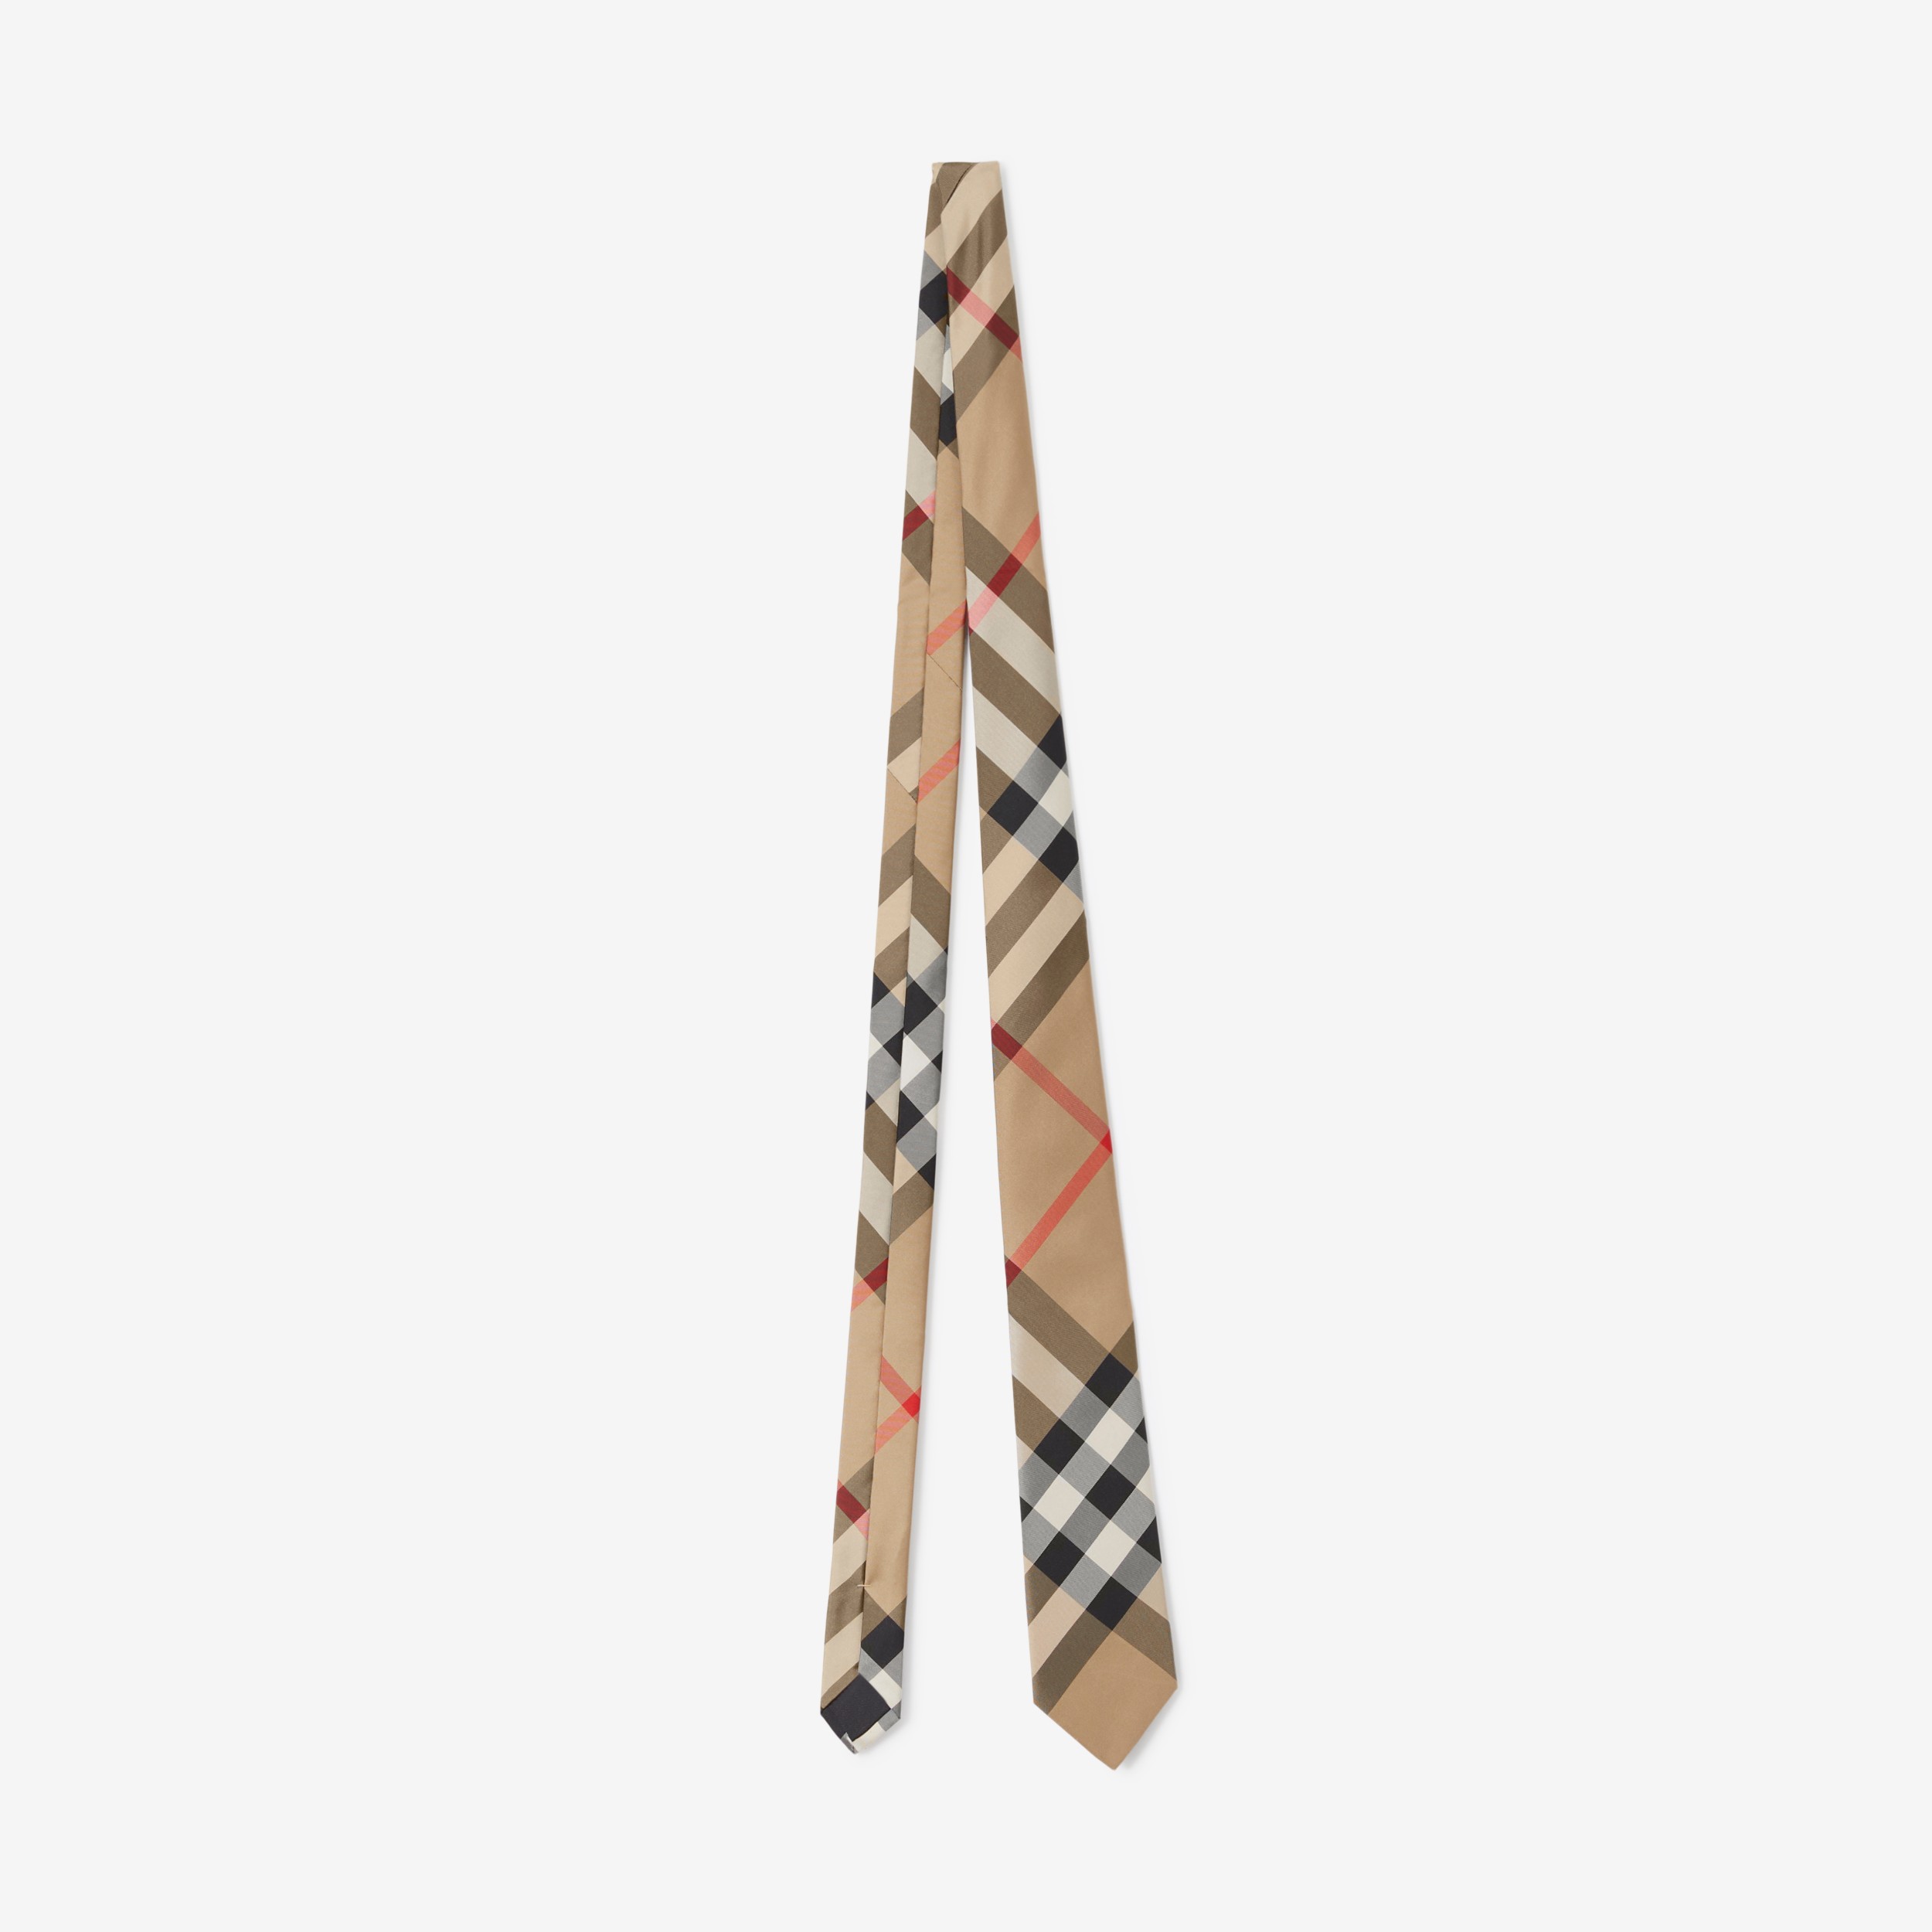 Actualizar 42+ imagen burberry neckties